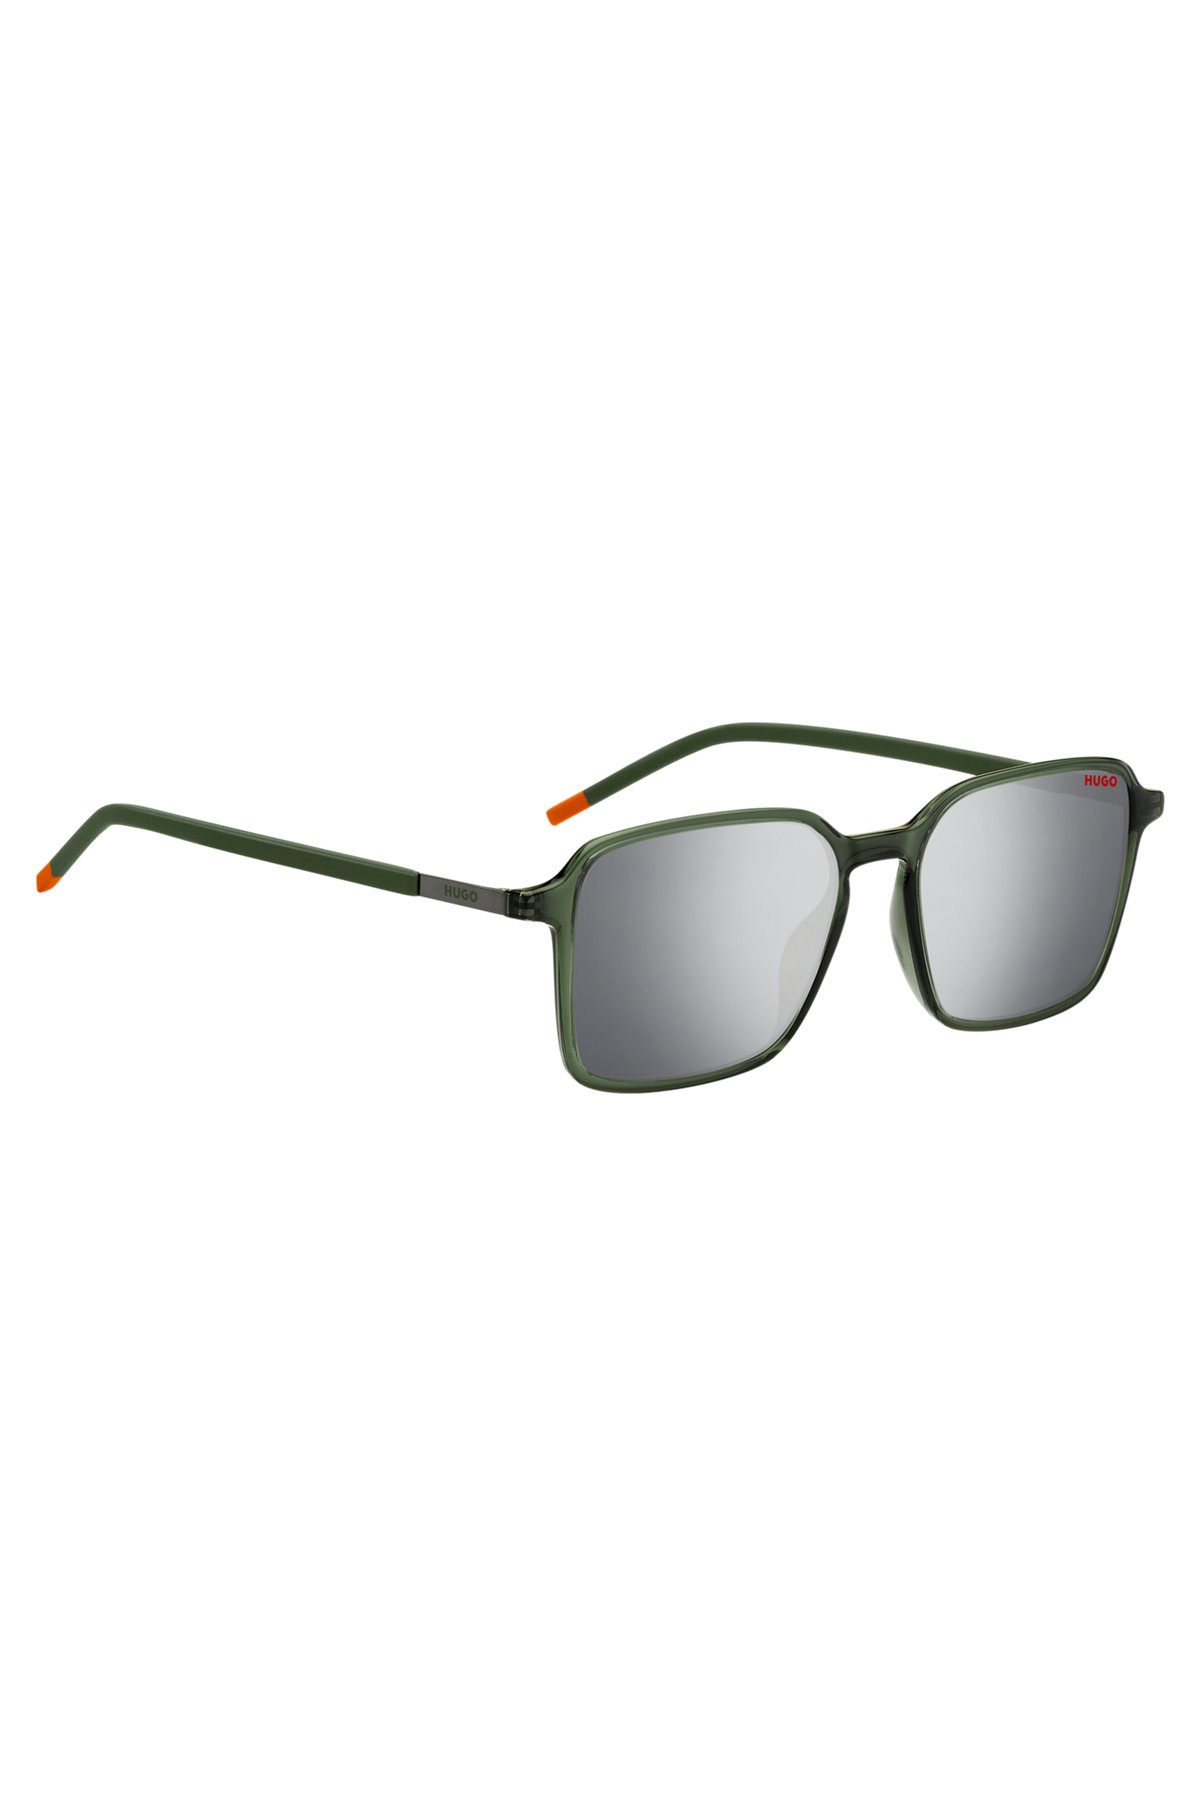 Grüne Sonnenbrille mit Bügeln aus Edelstahl, Dunkelgrün